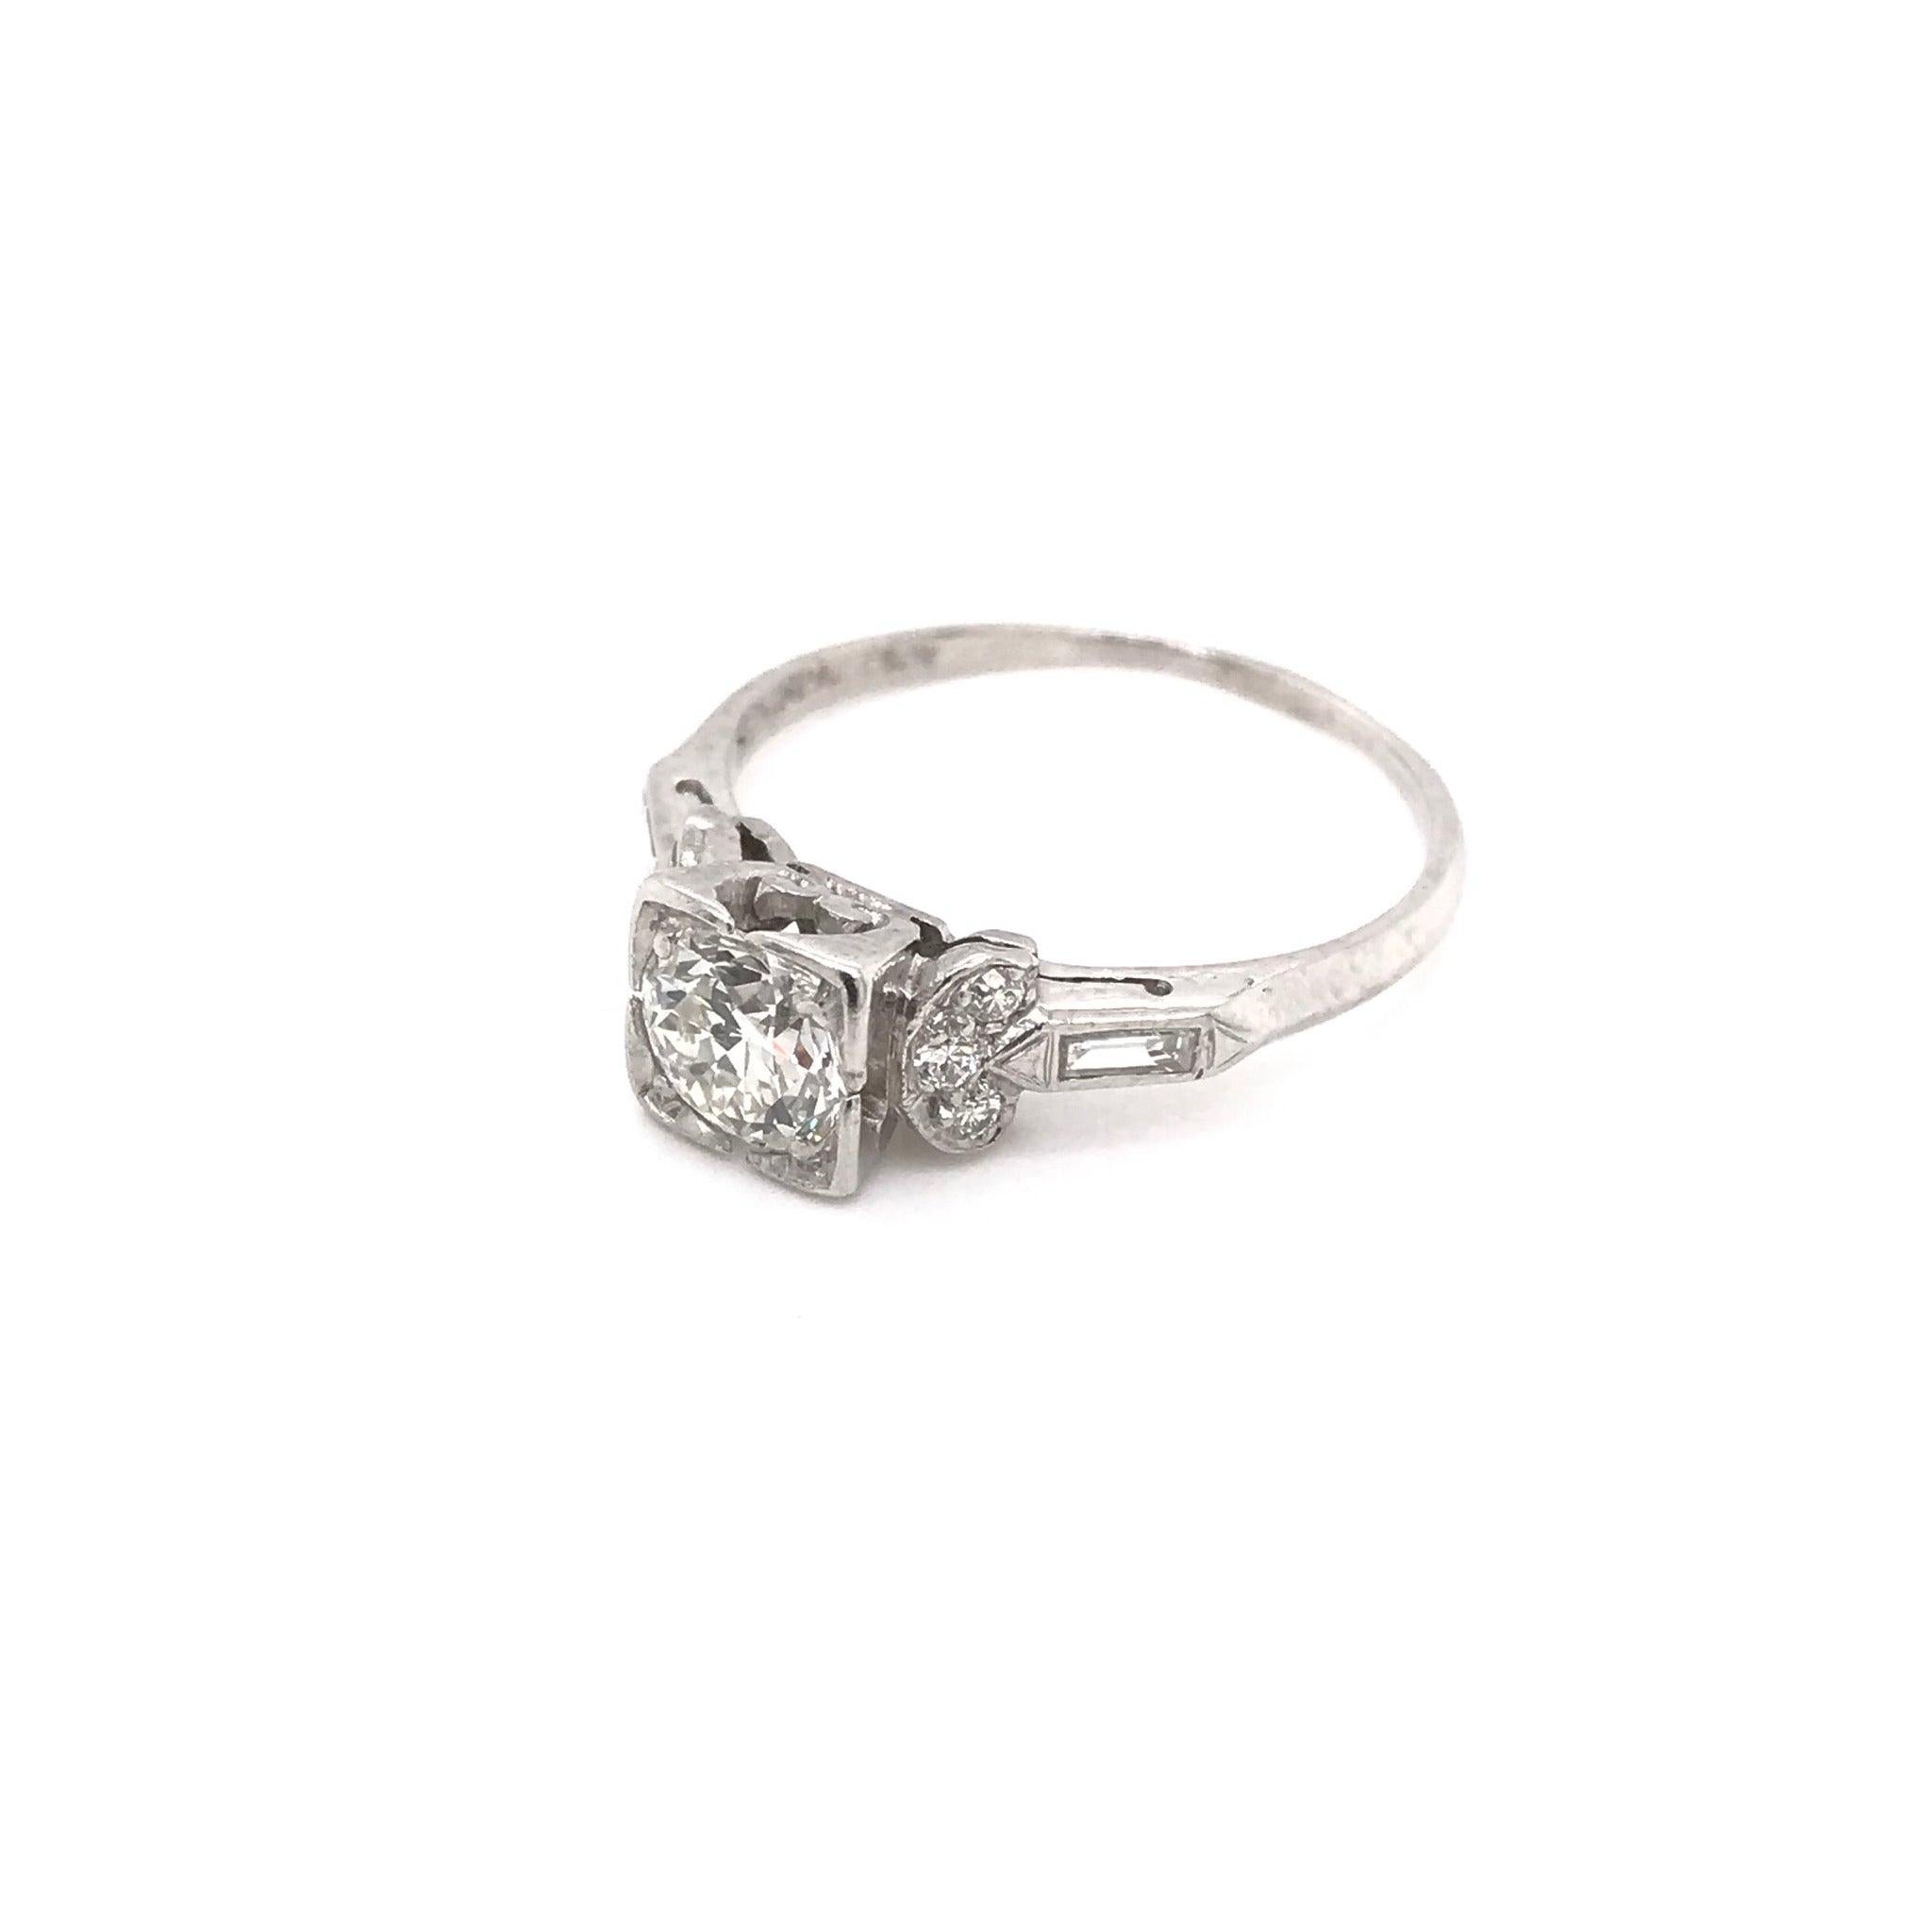 Cette bague a été fabriquée à la main au cours de la période de l'Art déco (1920-1940). La monture est en platine et comporte un diamant central d'environ 0,75 carat. Le diamant central est de couleur J et de pureté VS2. La monture en platine